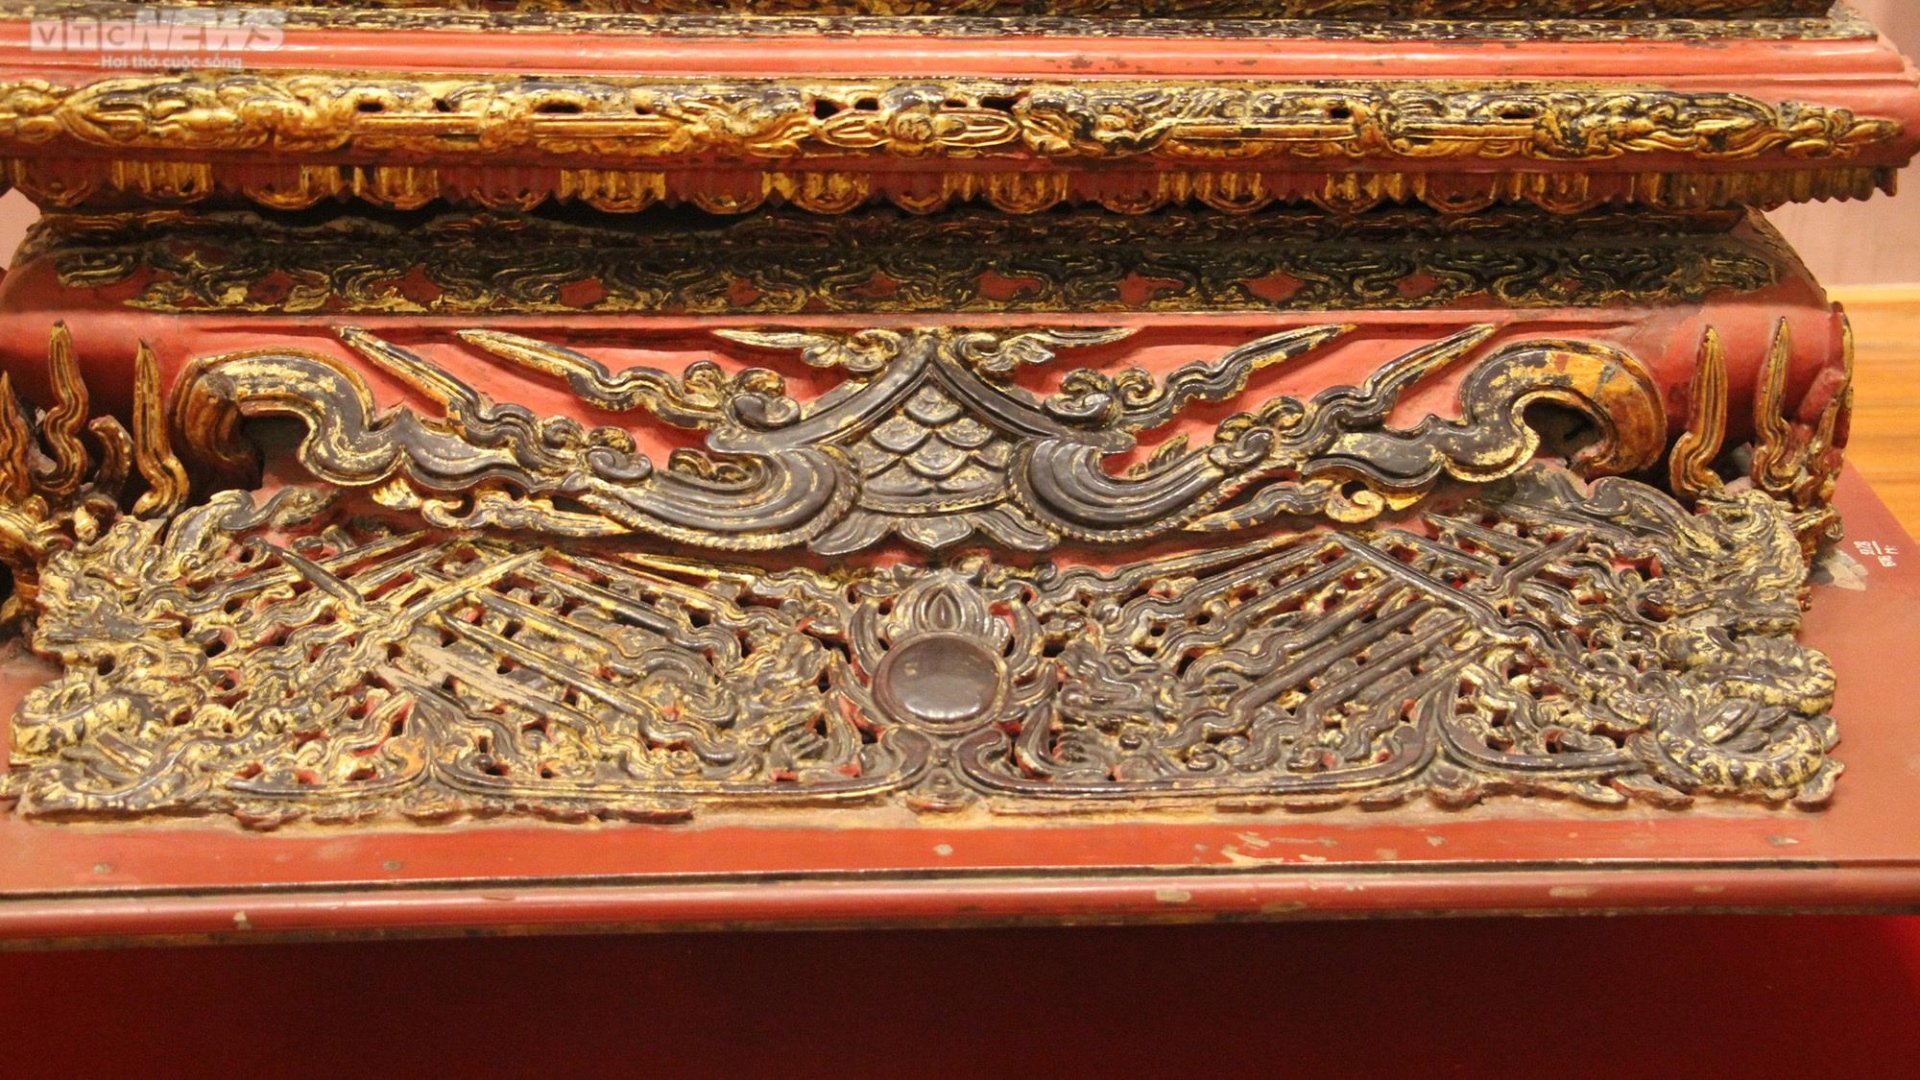 Chiêm ngưỡng ngai thờ độc nhất vô nhị hơn 300 năm tuổi ở Thái Bình - 14